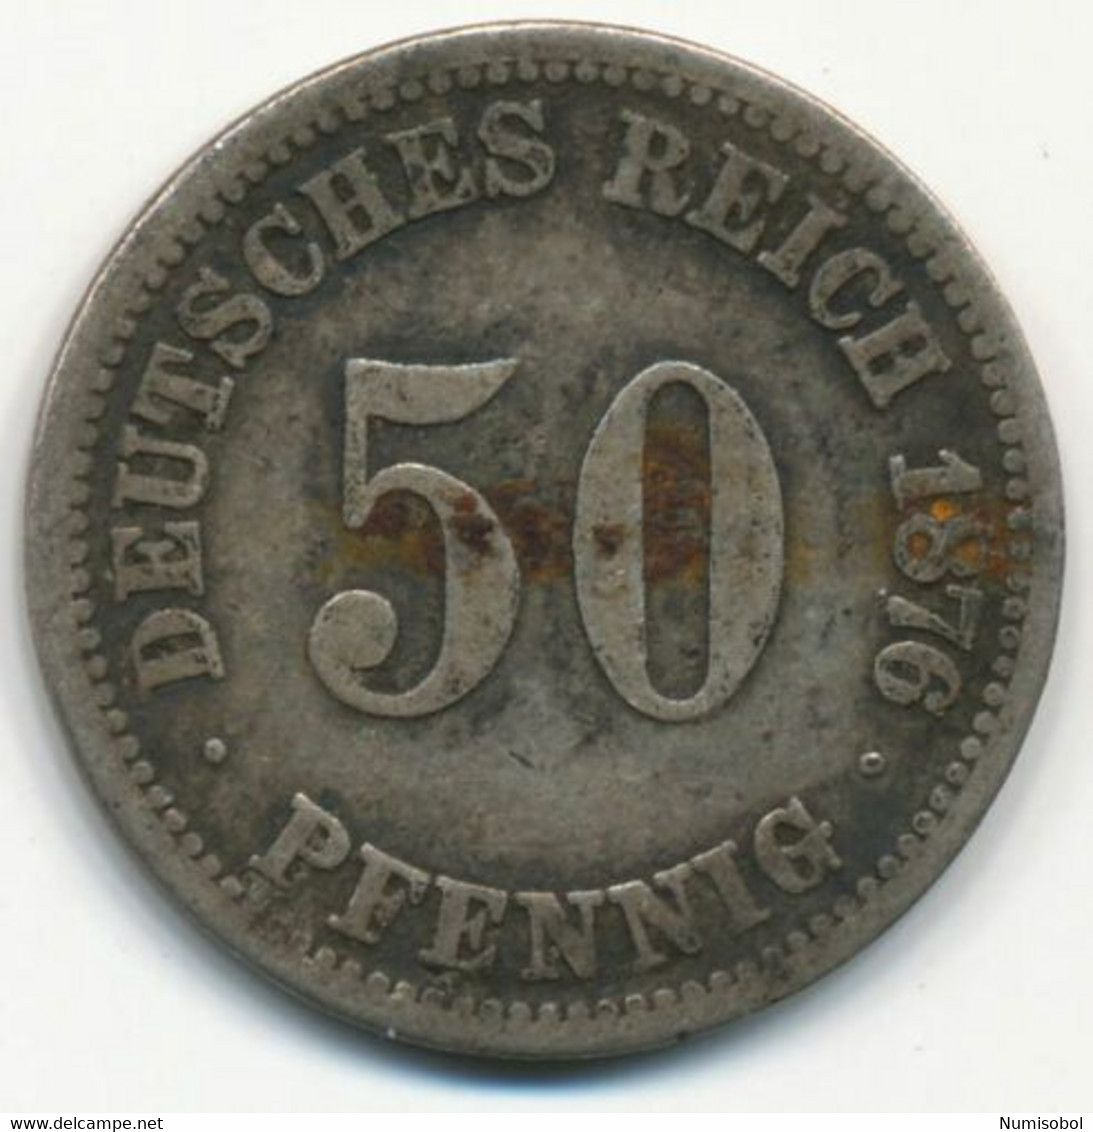 GERMANY, DEUTSCHLAND - 50 Pfennig (A) 1876. (D219) - 50 Pfennig